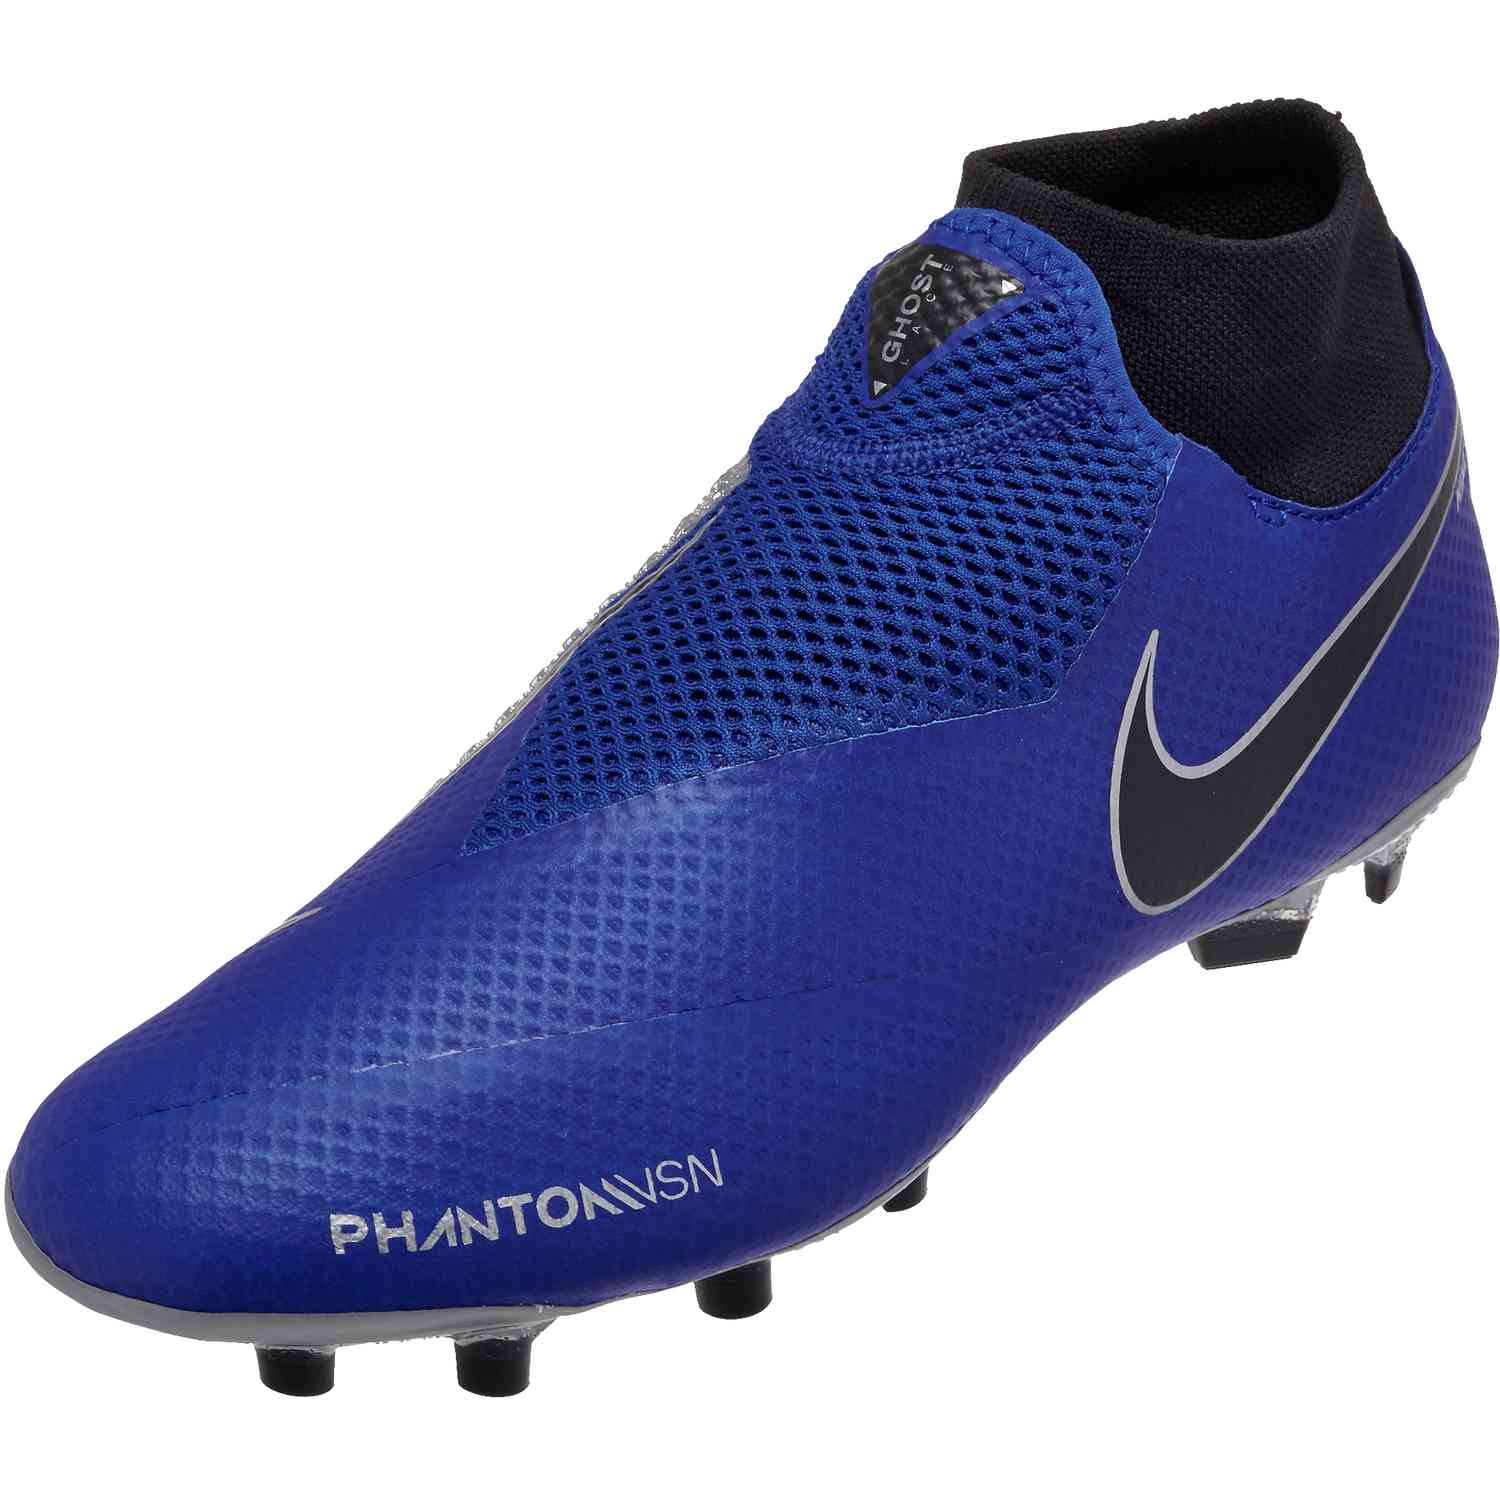 Nike PhantomVSN Pro FG - Always Forward 